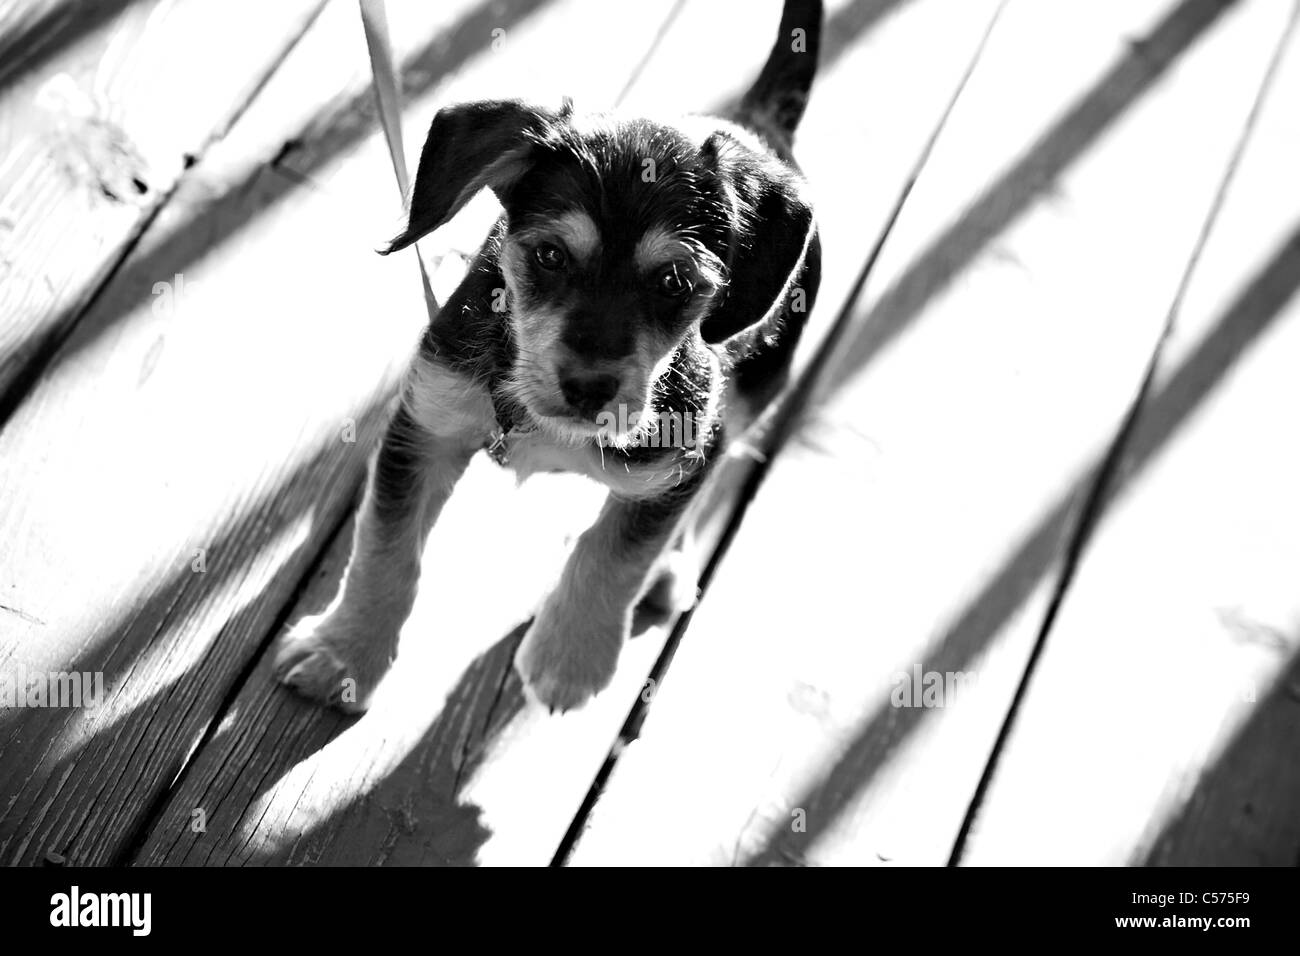 Un mignon chiot de race mixte borkie en noir et blanc. Profondeur de champ. La moitié moitié beagle yorkshire terrier / yorkie. Banque D'Images